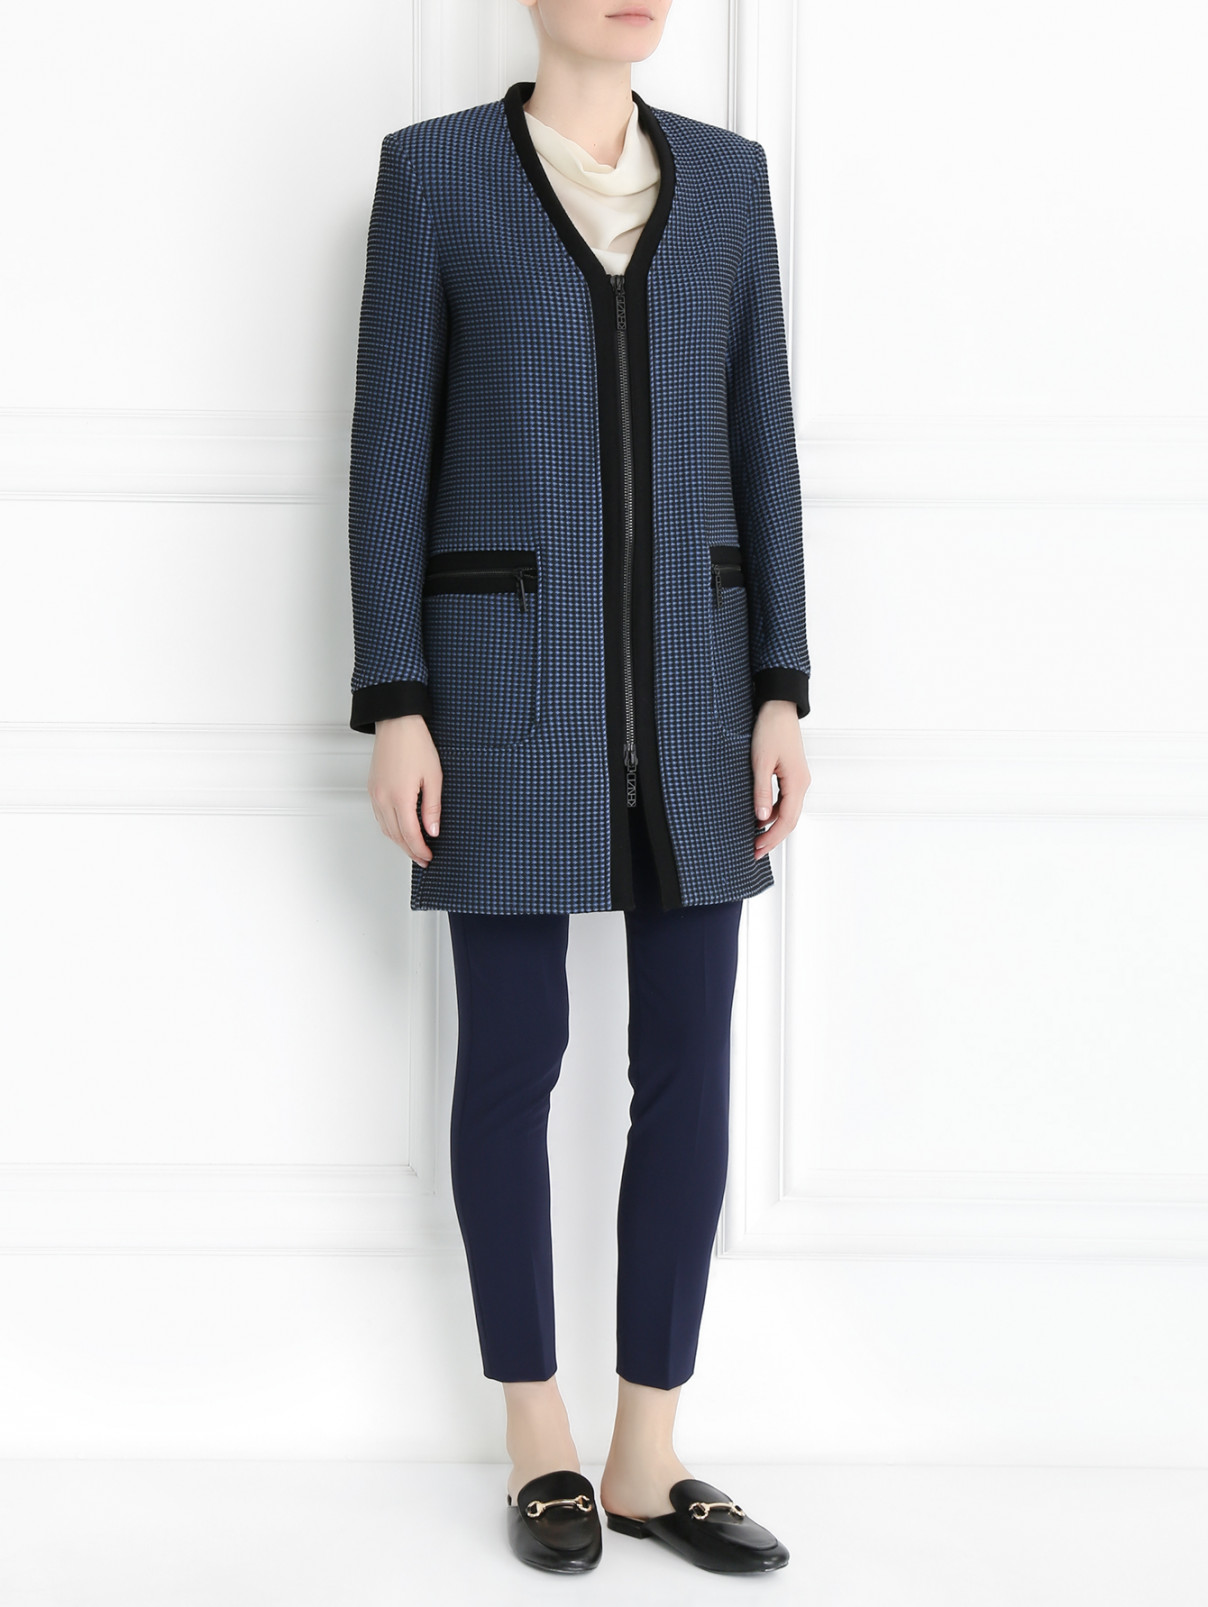 Пальто с узором и контрастными вставками Kenzo  –  Модель Общий вид  – Цвет:  Узор